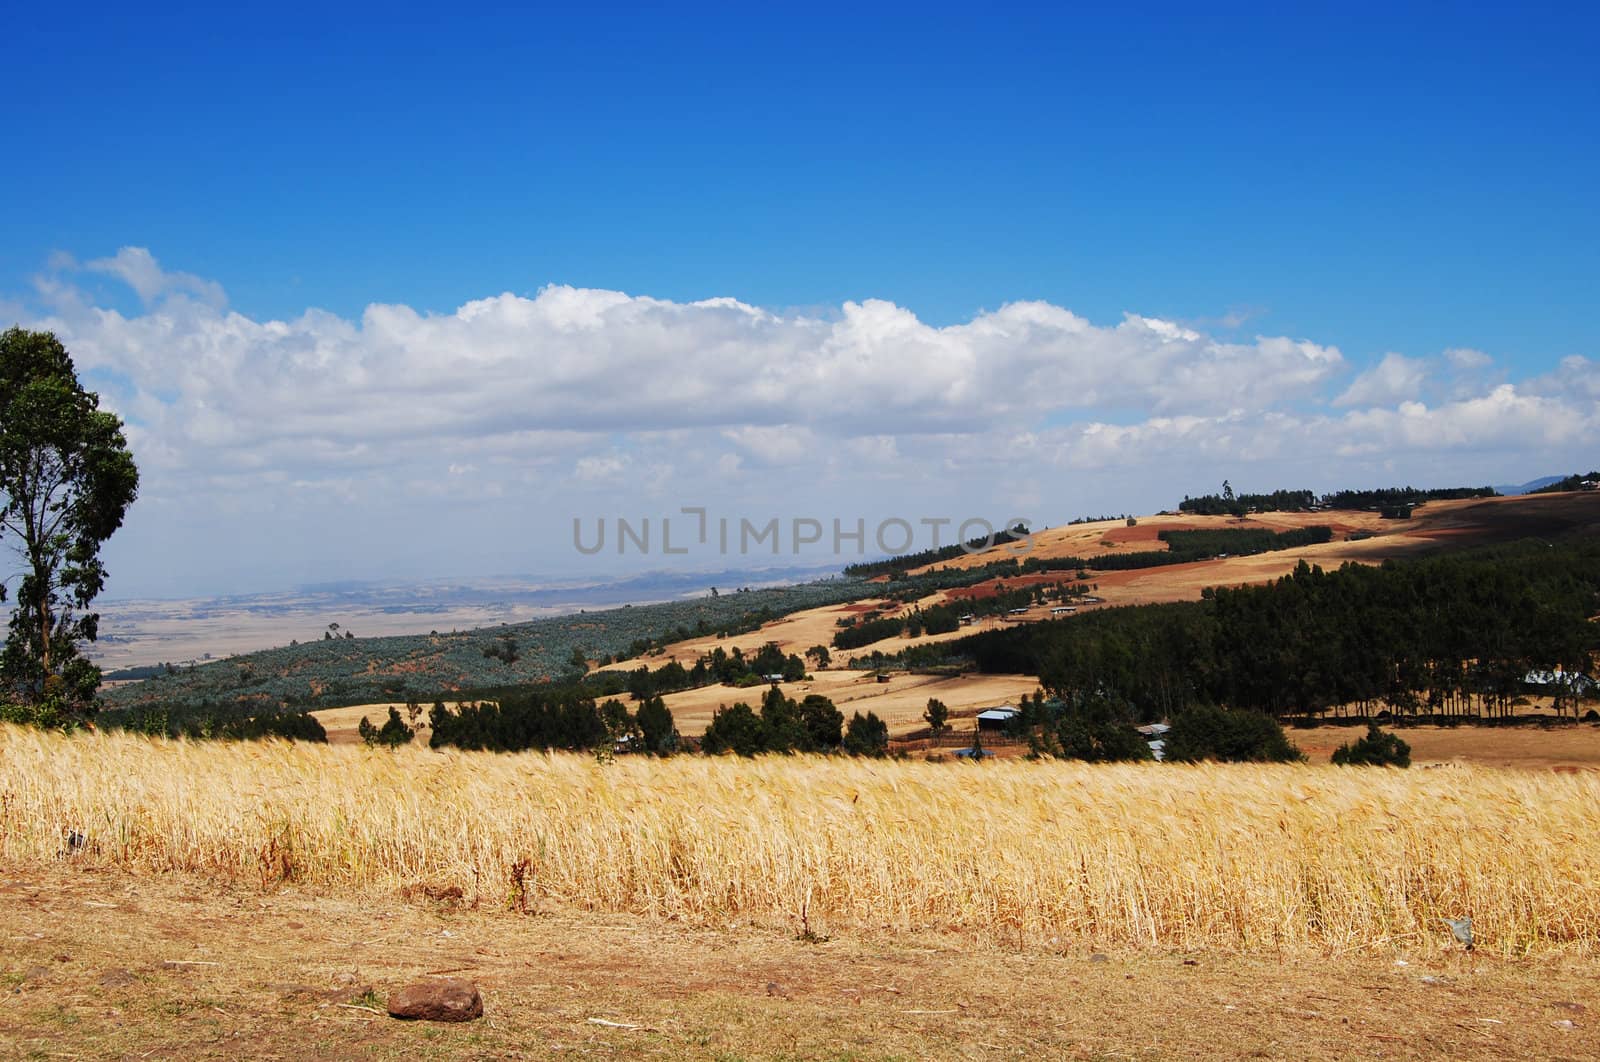 ethiopian landscape by viviolsen